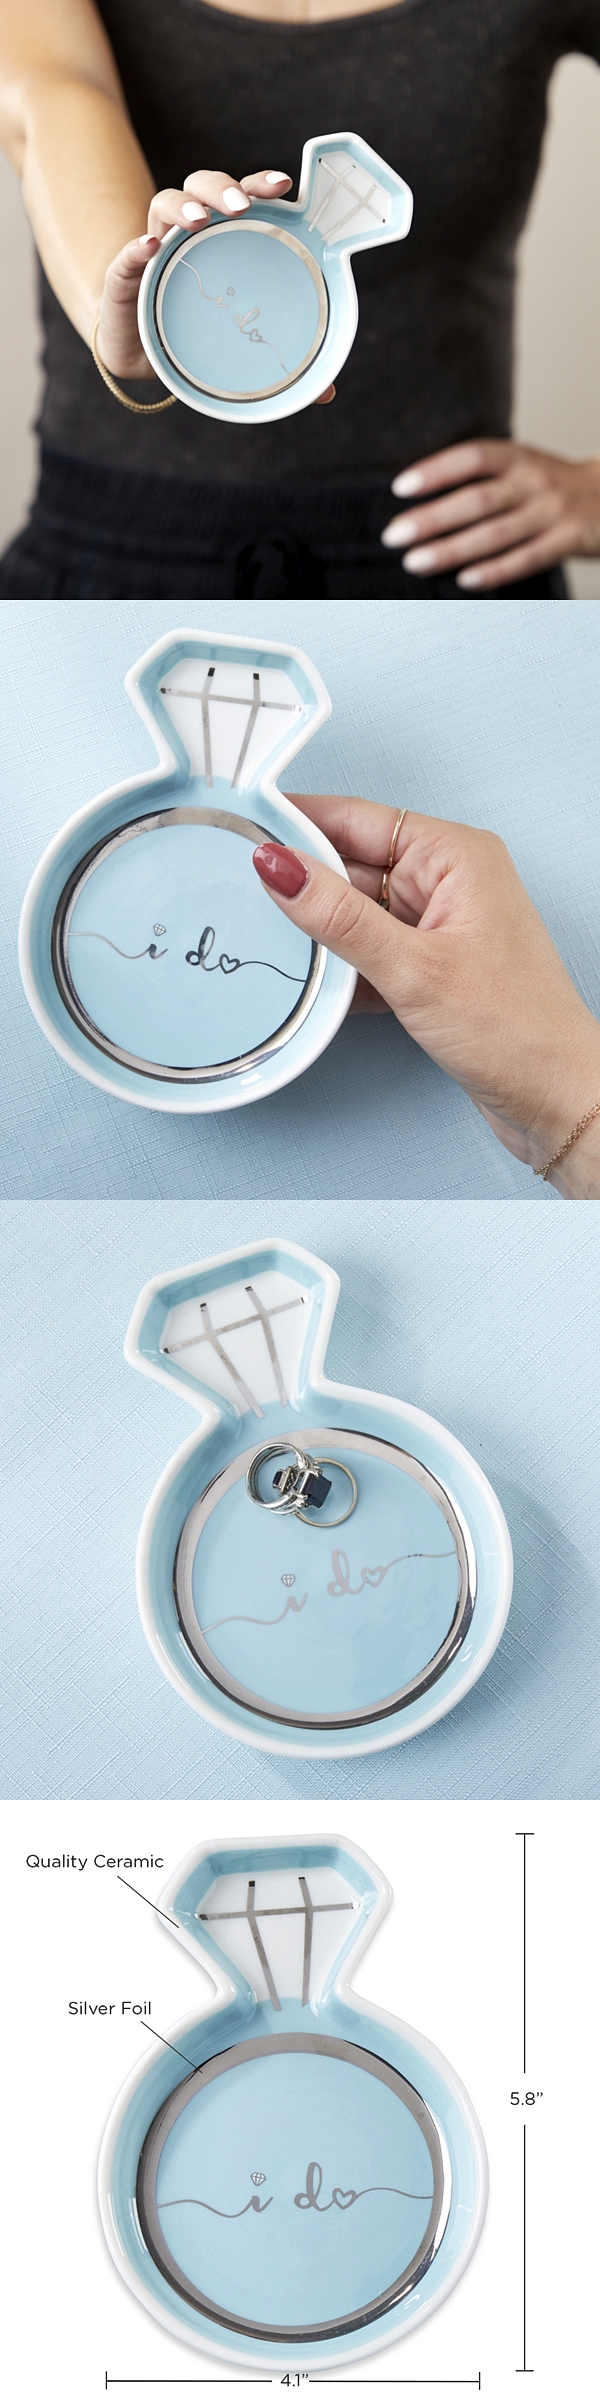 Kate Aspen Diamond Ring-Shaped "I Do" Ceramic Trinket Dish